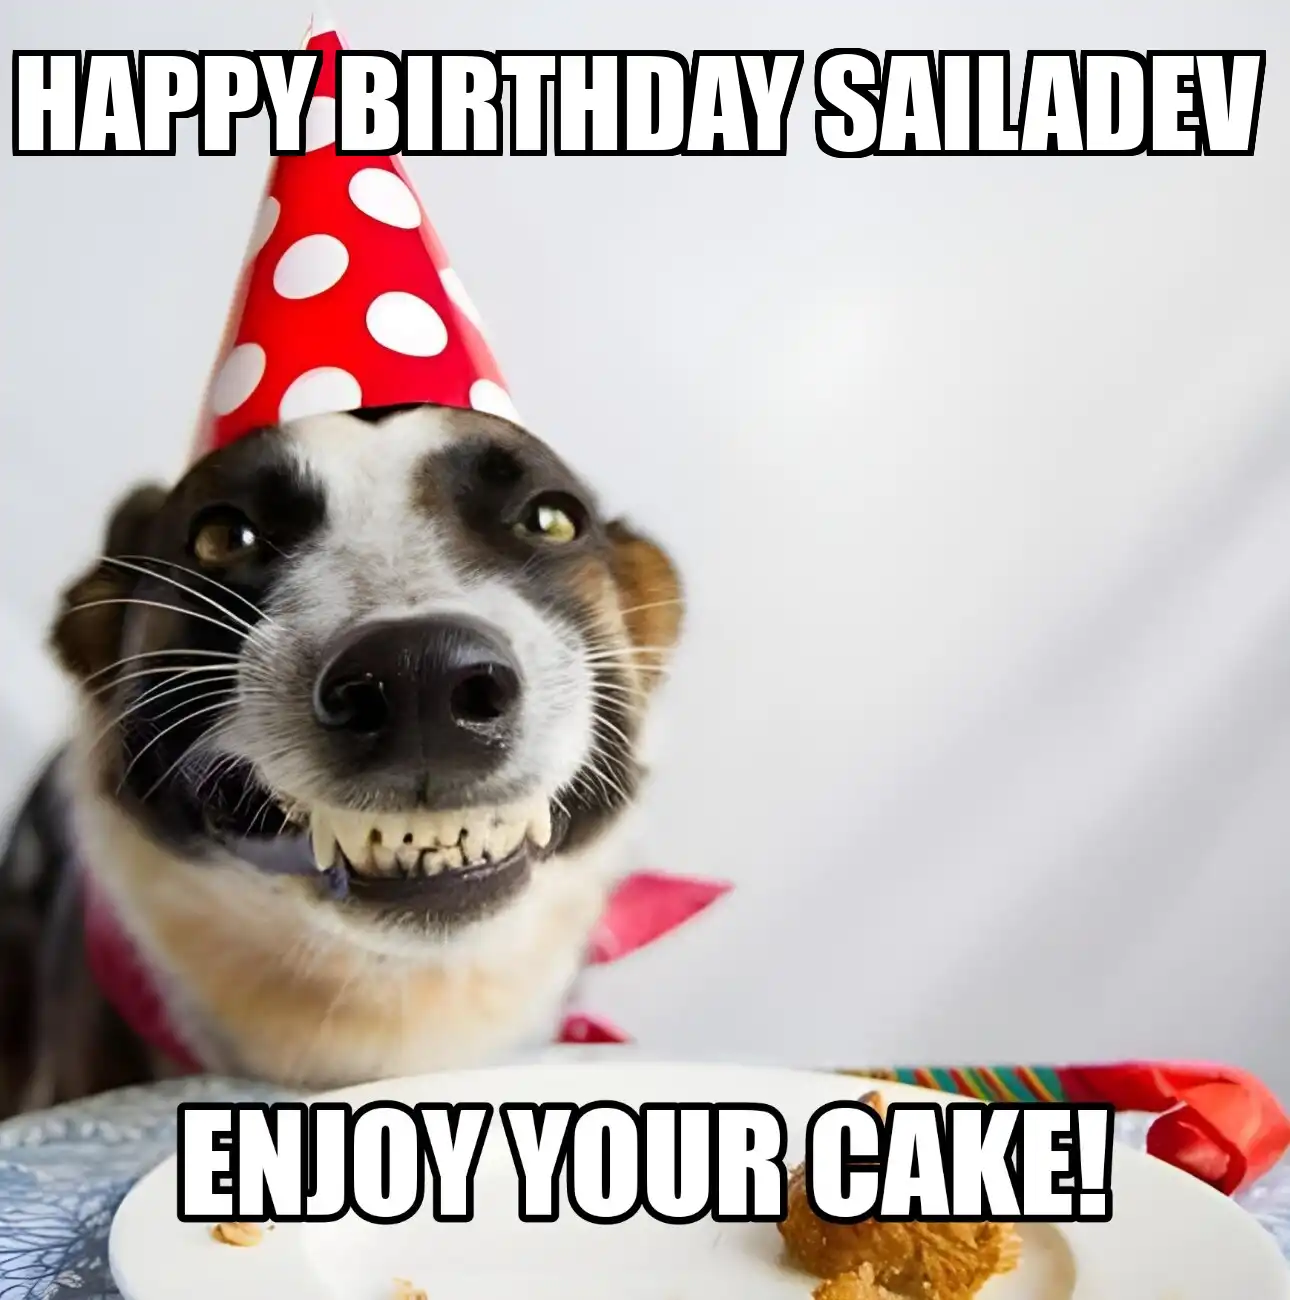 Happy Birthday Sailadev Enjoy Your Cake Dog Meme